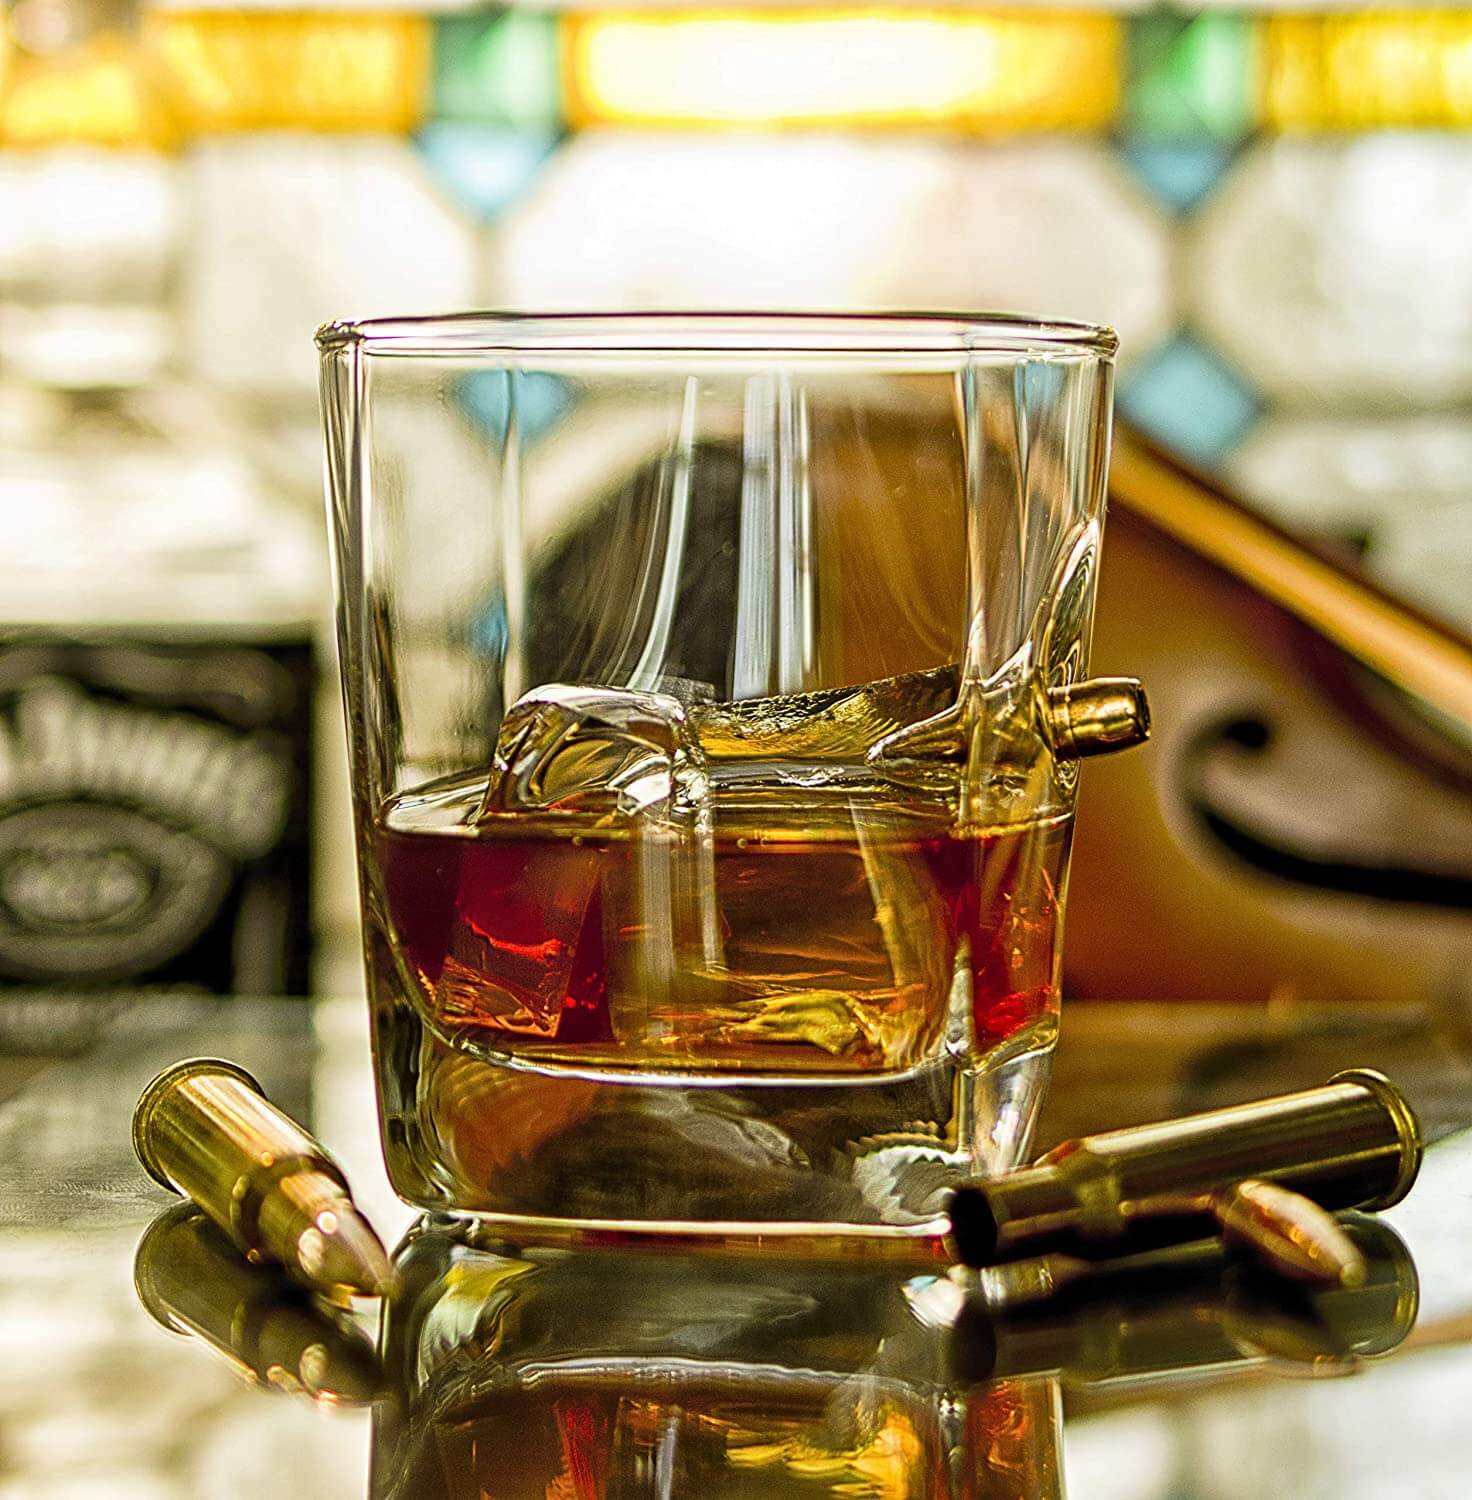 Whiskyglas mit Projektil - Projektil im Glas - Kolberg Glas - edles Männergeschenk - echtes Caliber 308 Projektil